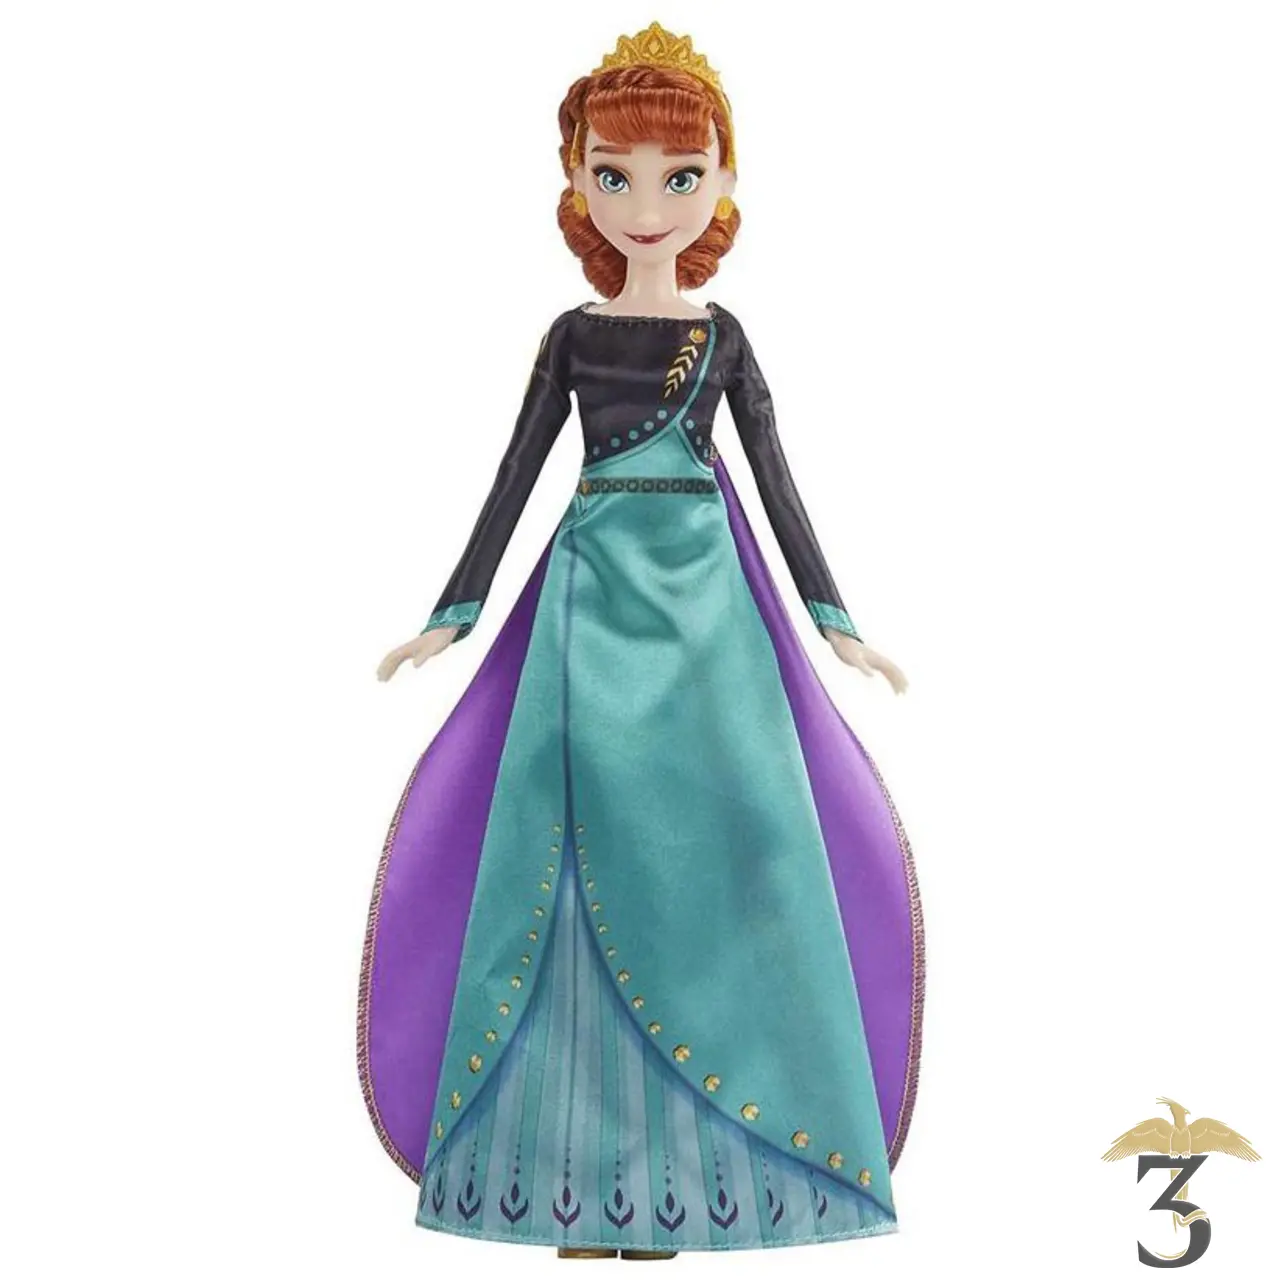 Anna en Robe Verte - La Reine des Neiges Disney